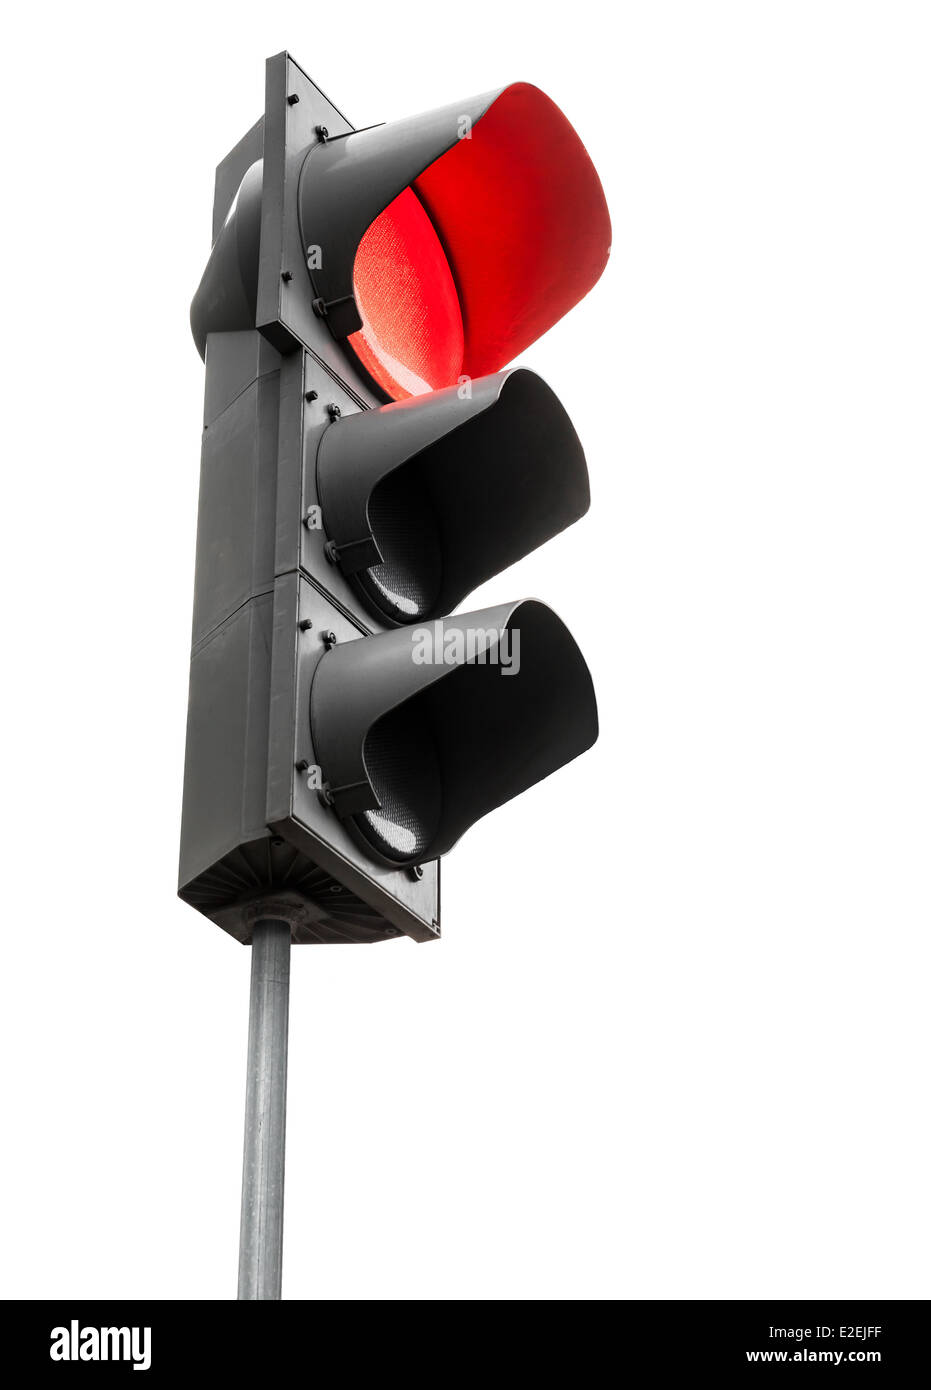 Schwarze Ampel mit roten Stopp-Signal isoliert auf weißem Hintergrund Stockfoto